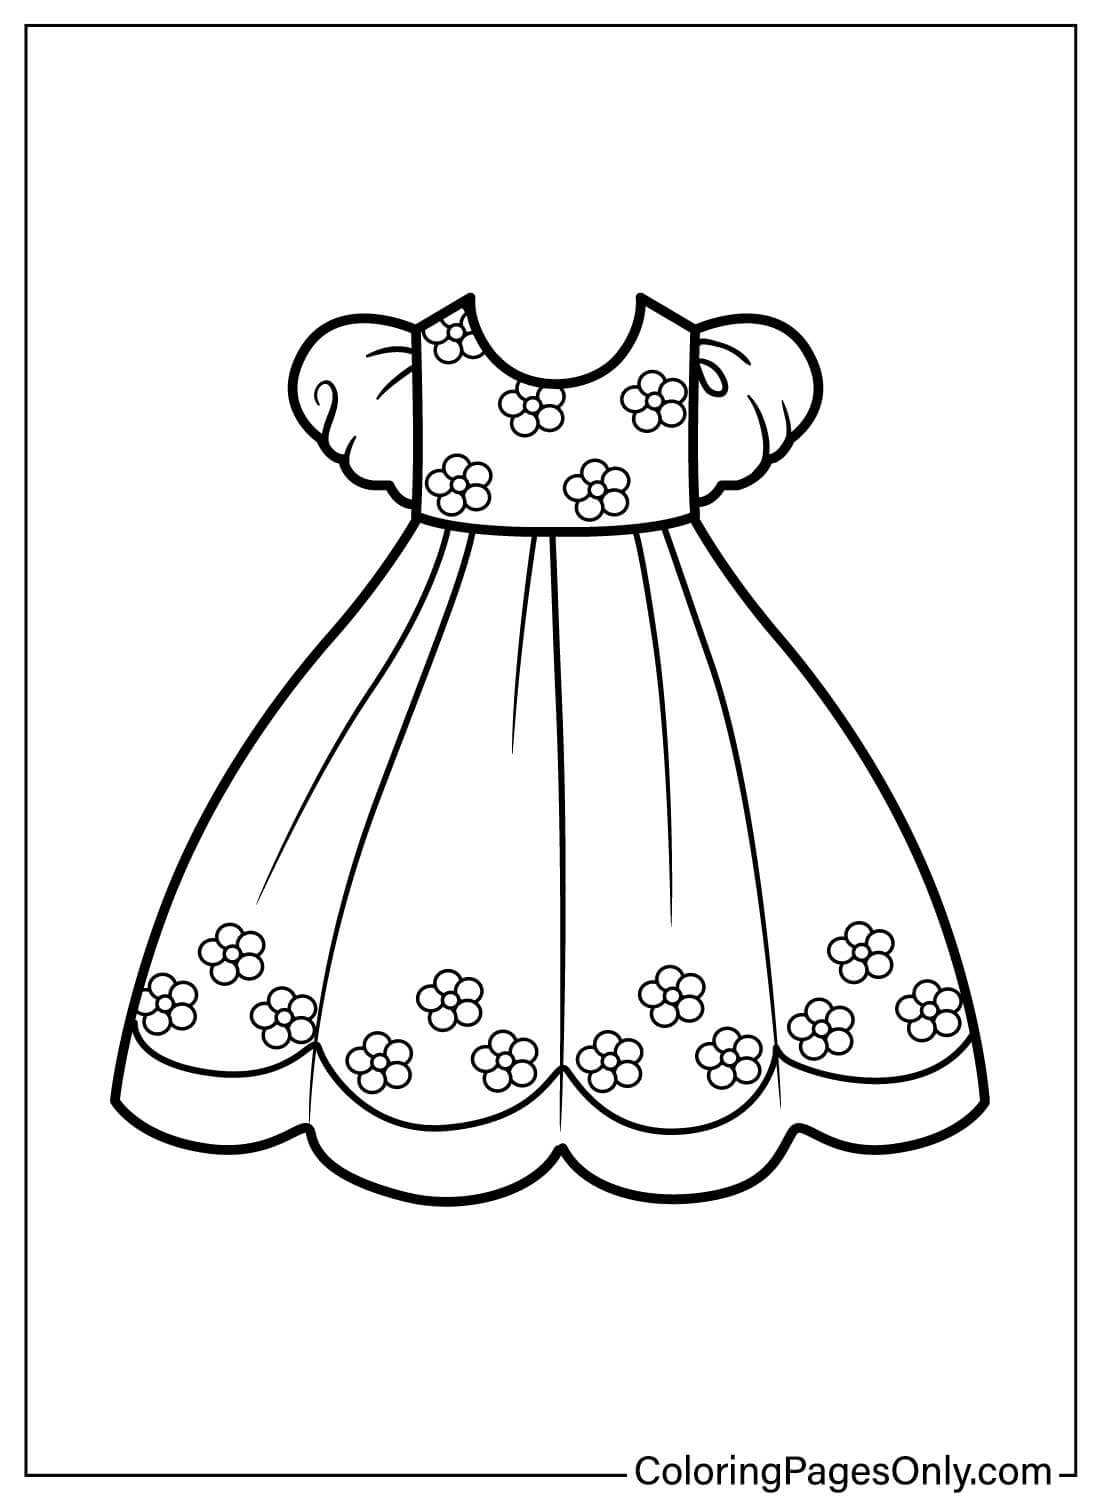 婴儿连衣裙彩页 婴儿连衣裙